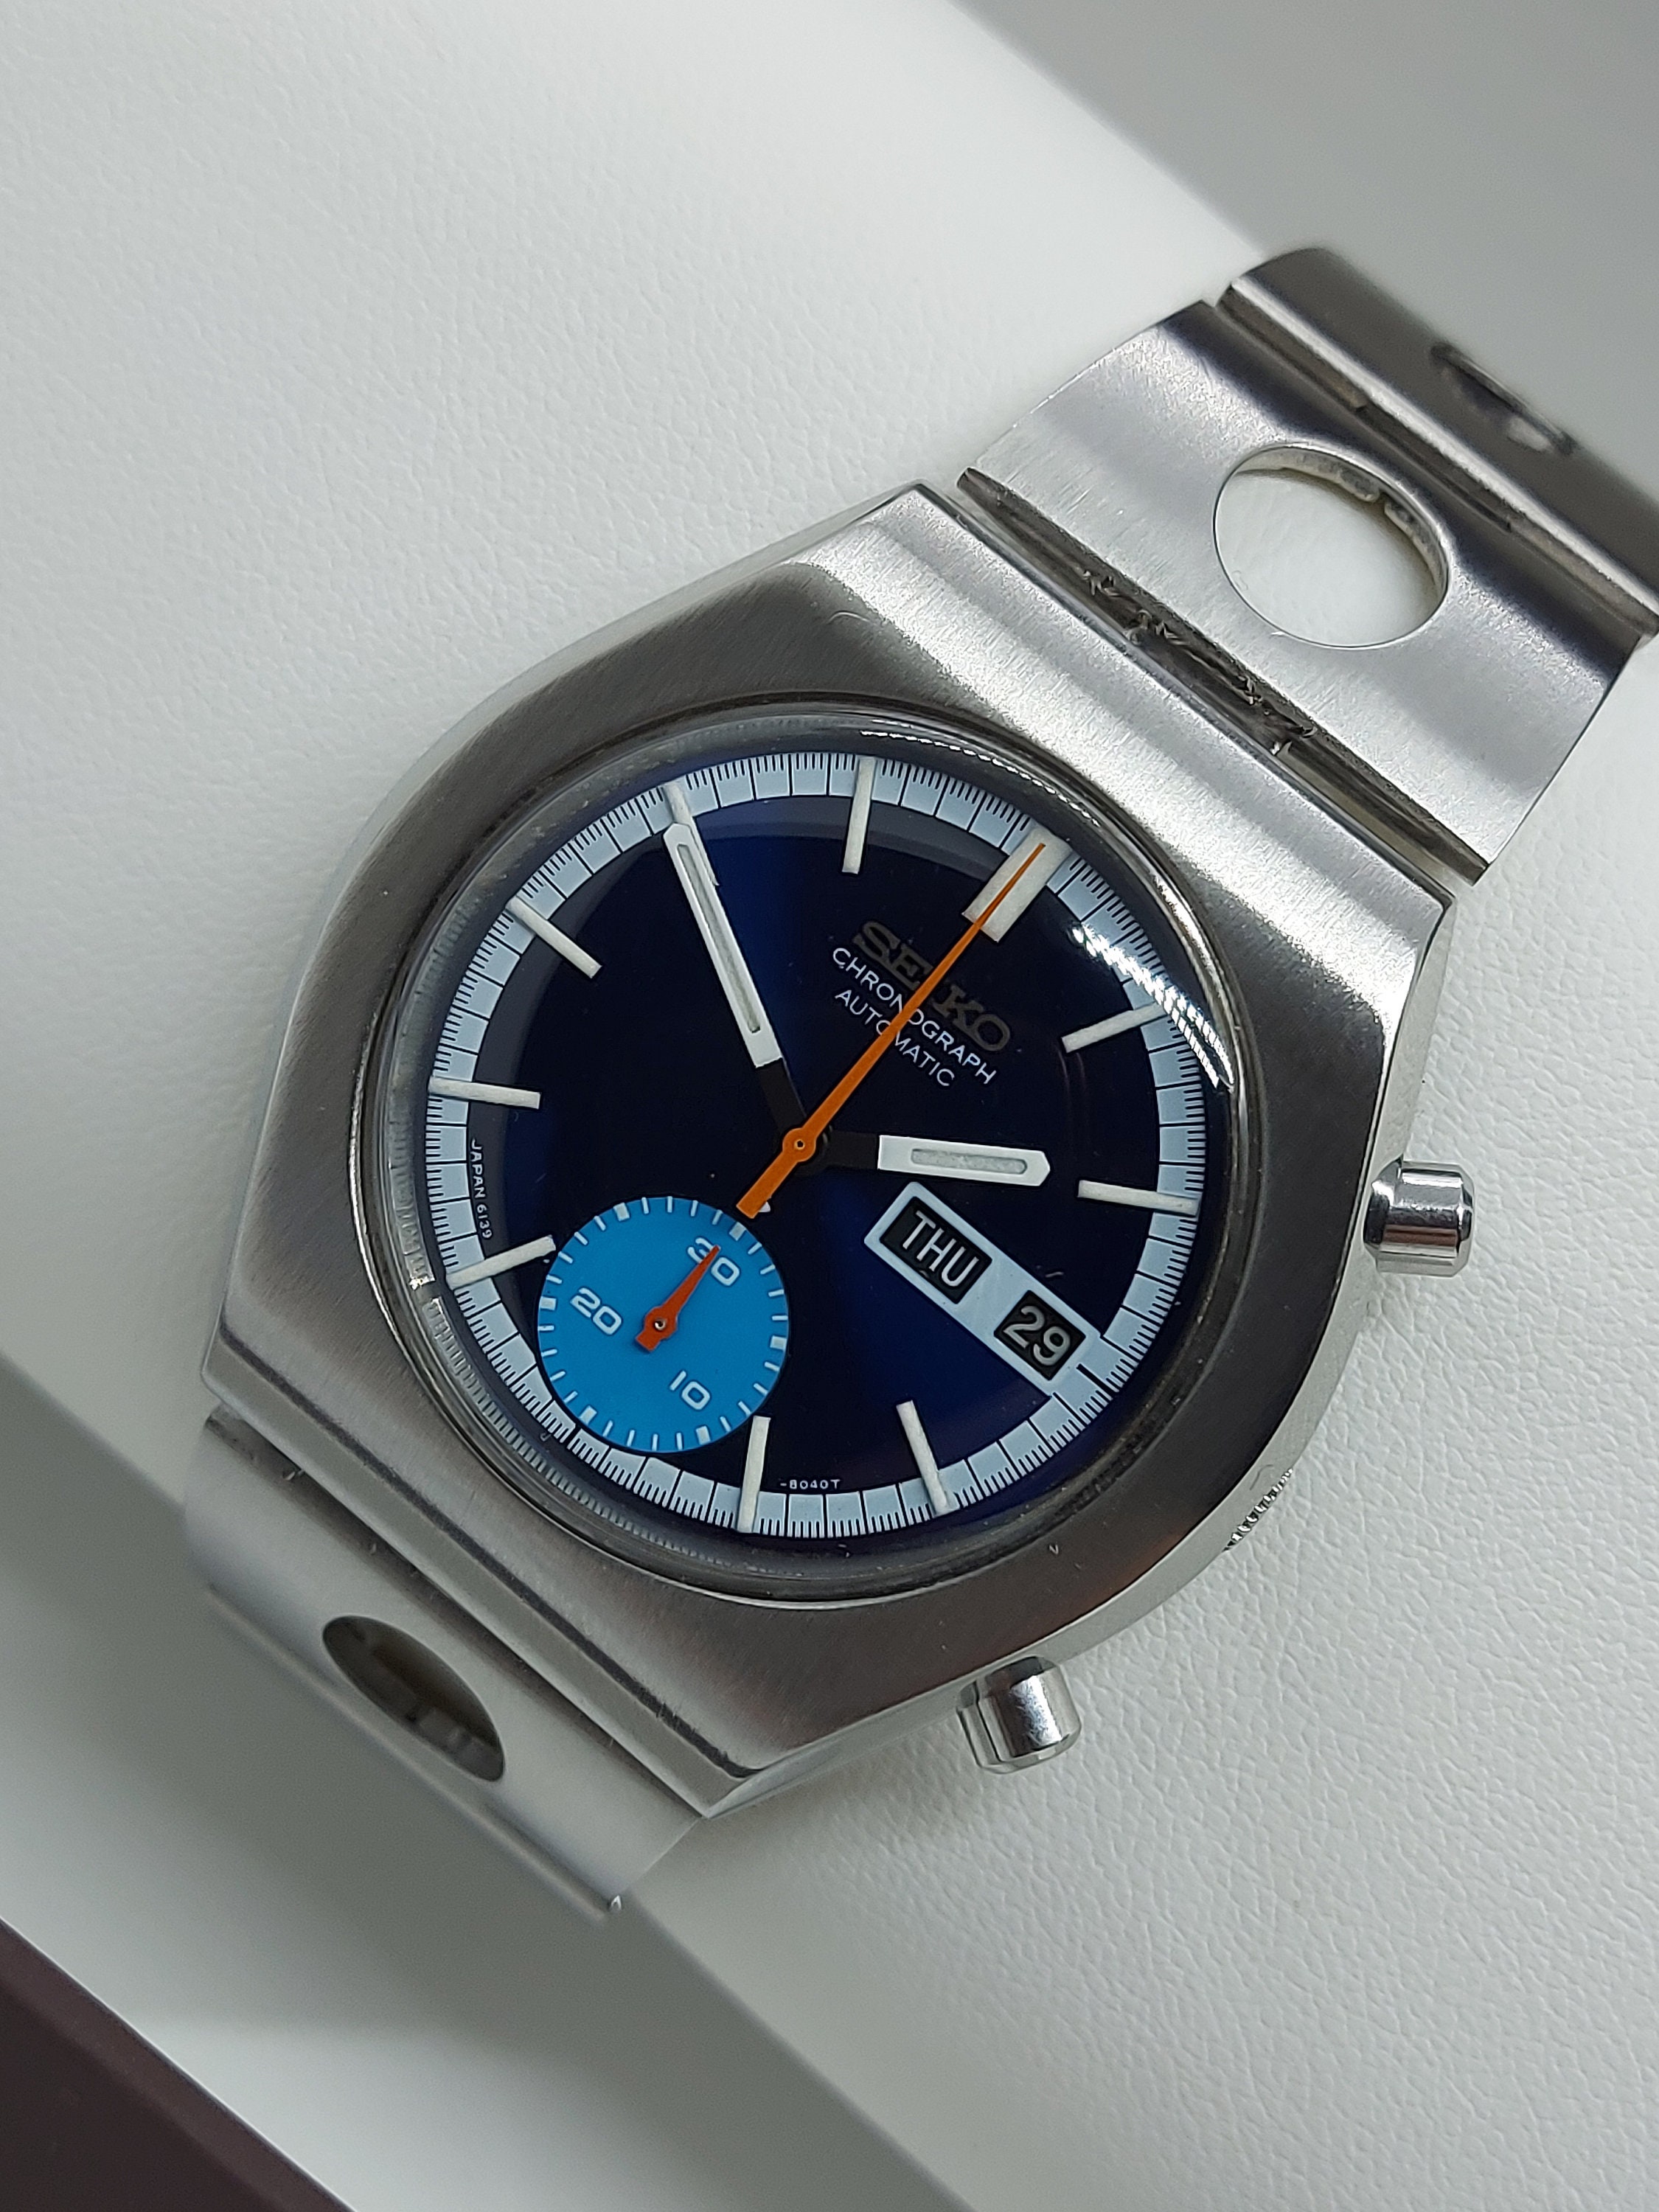 Vintage SEIKO 6139-8029 Chronograph Men's Watch 1970. Free - Etsy